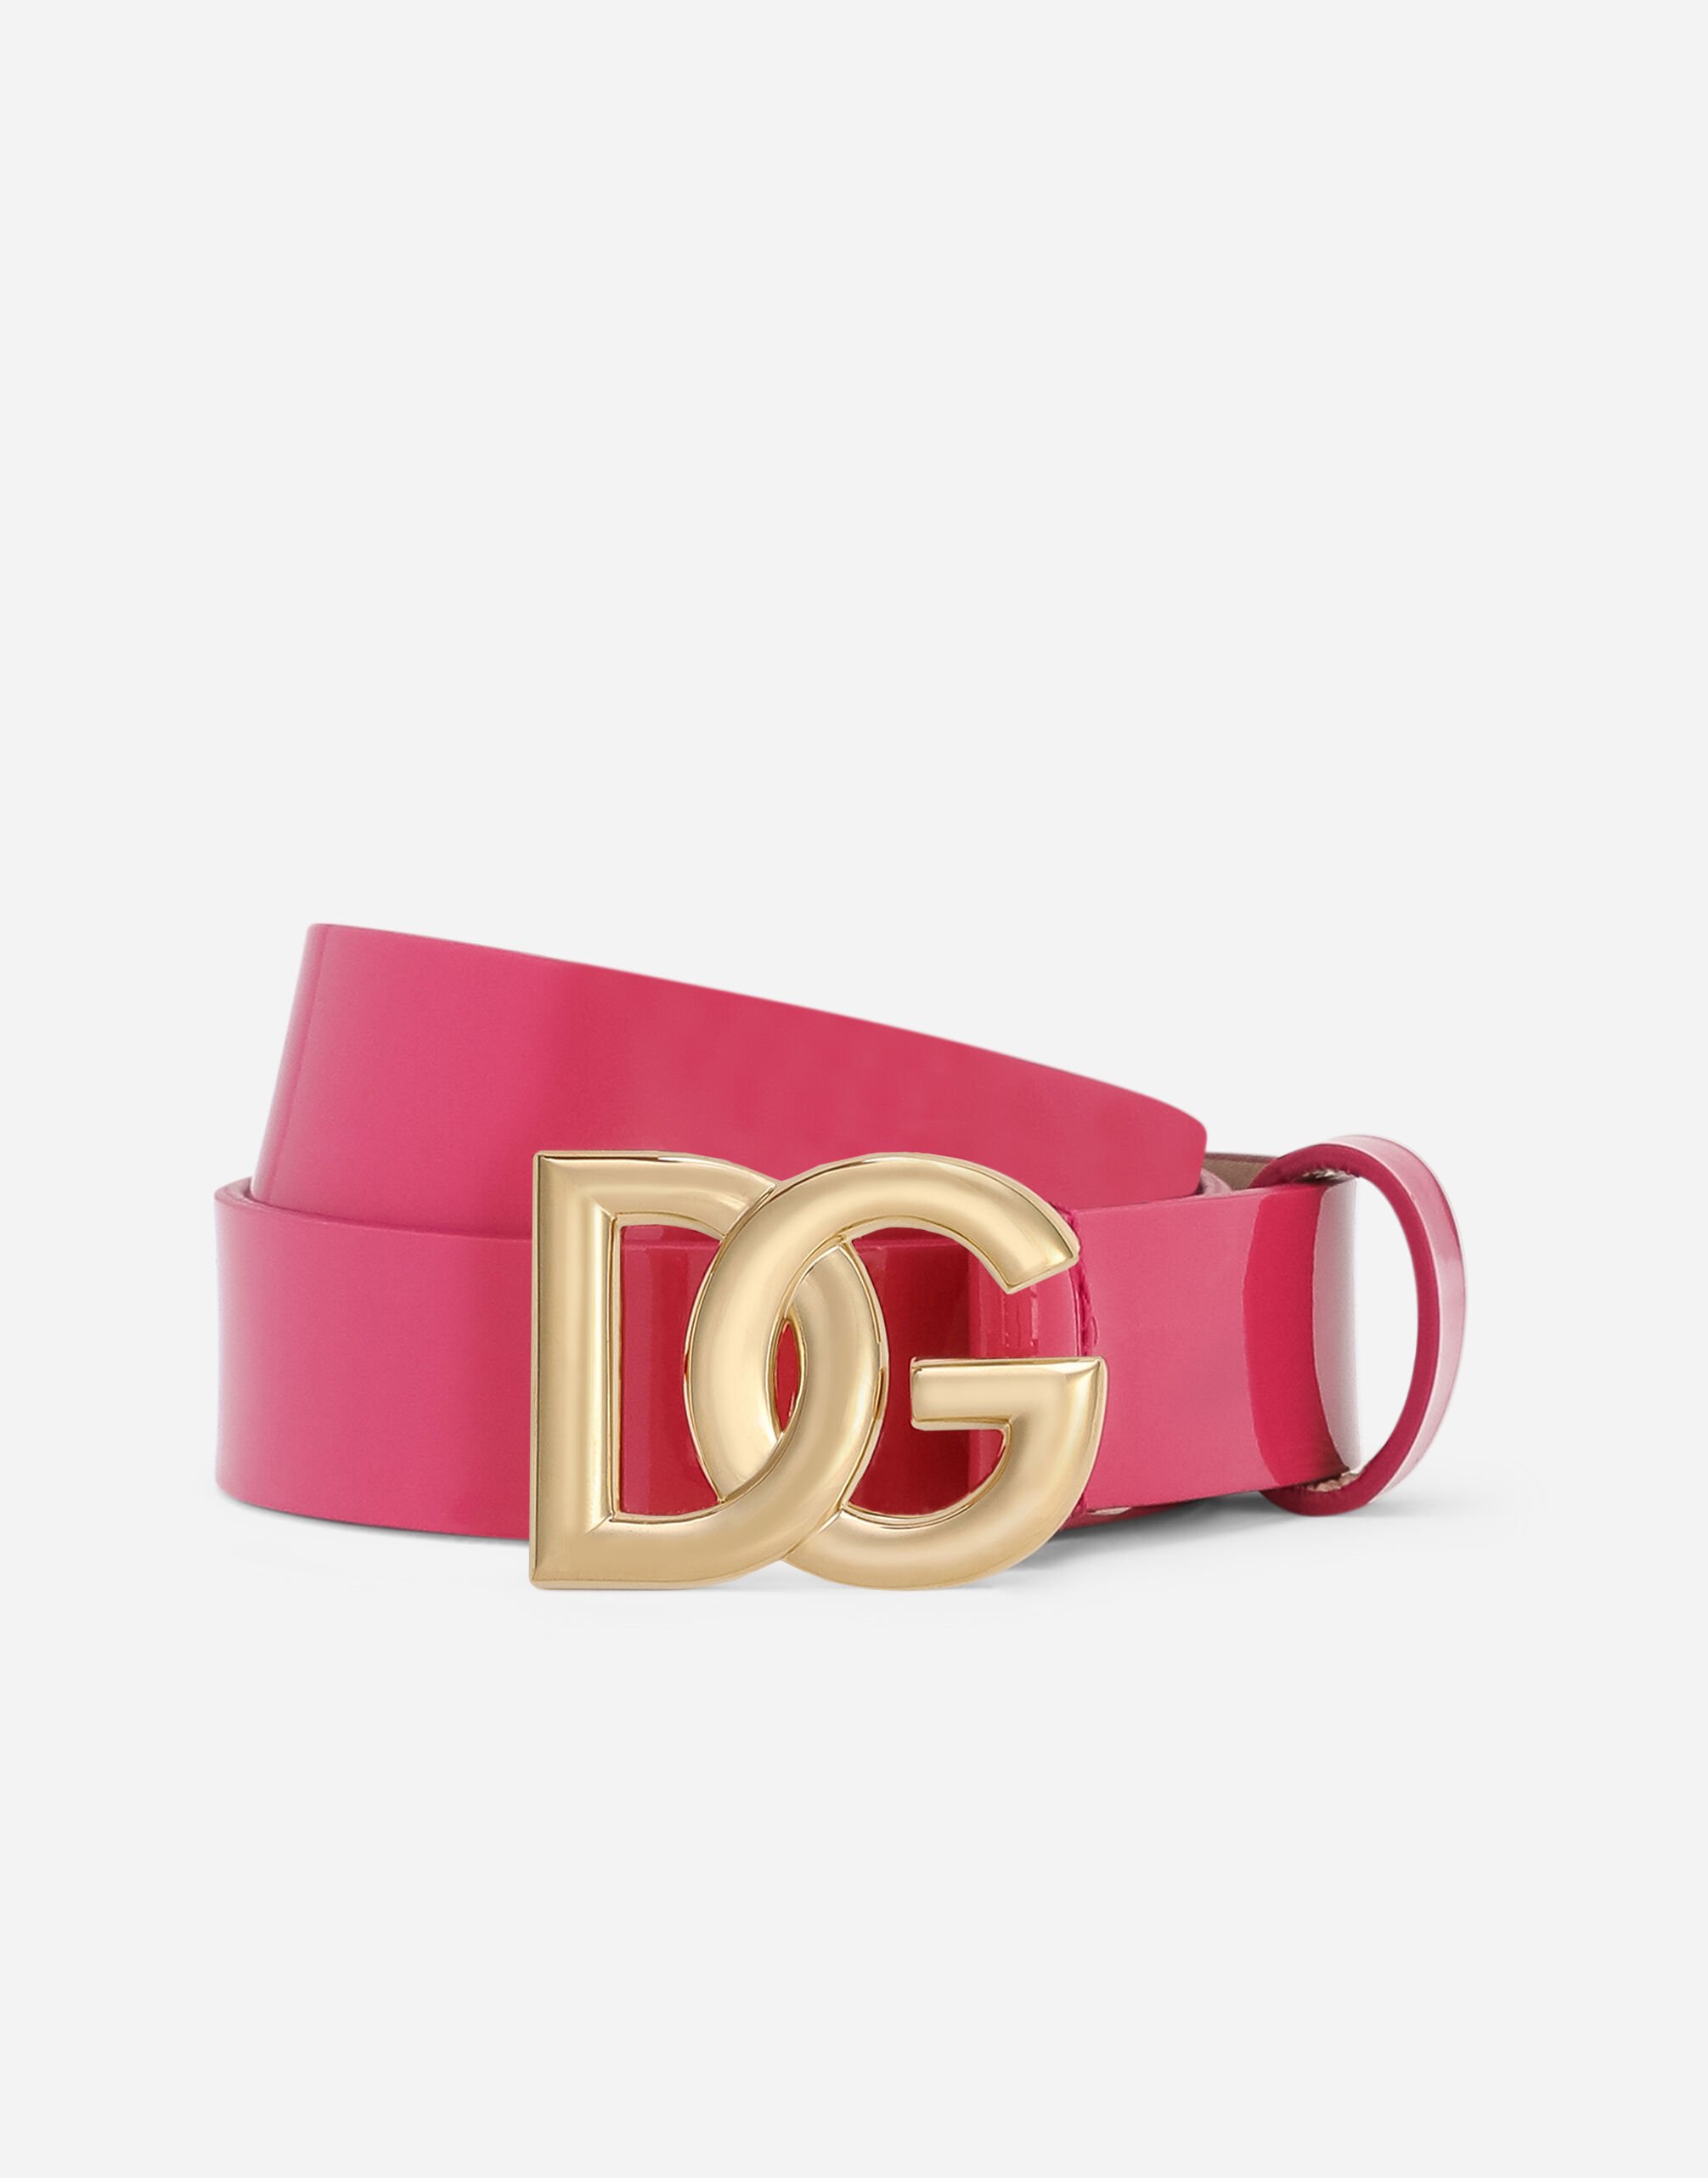 Dolce & Gabbana Patent leather belt with DG-logo buckle Print LB4H48HS5QR